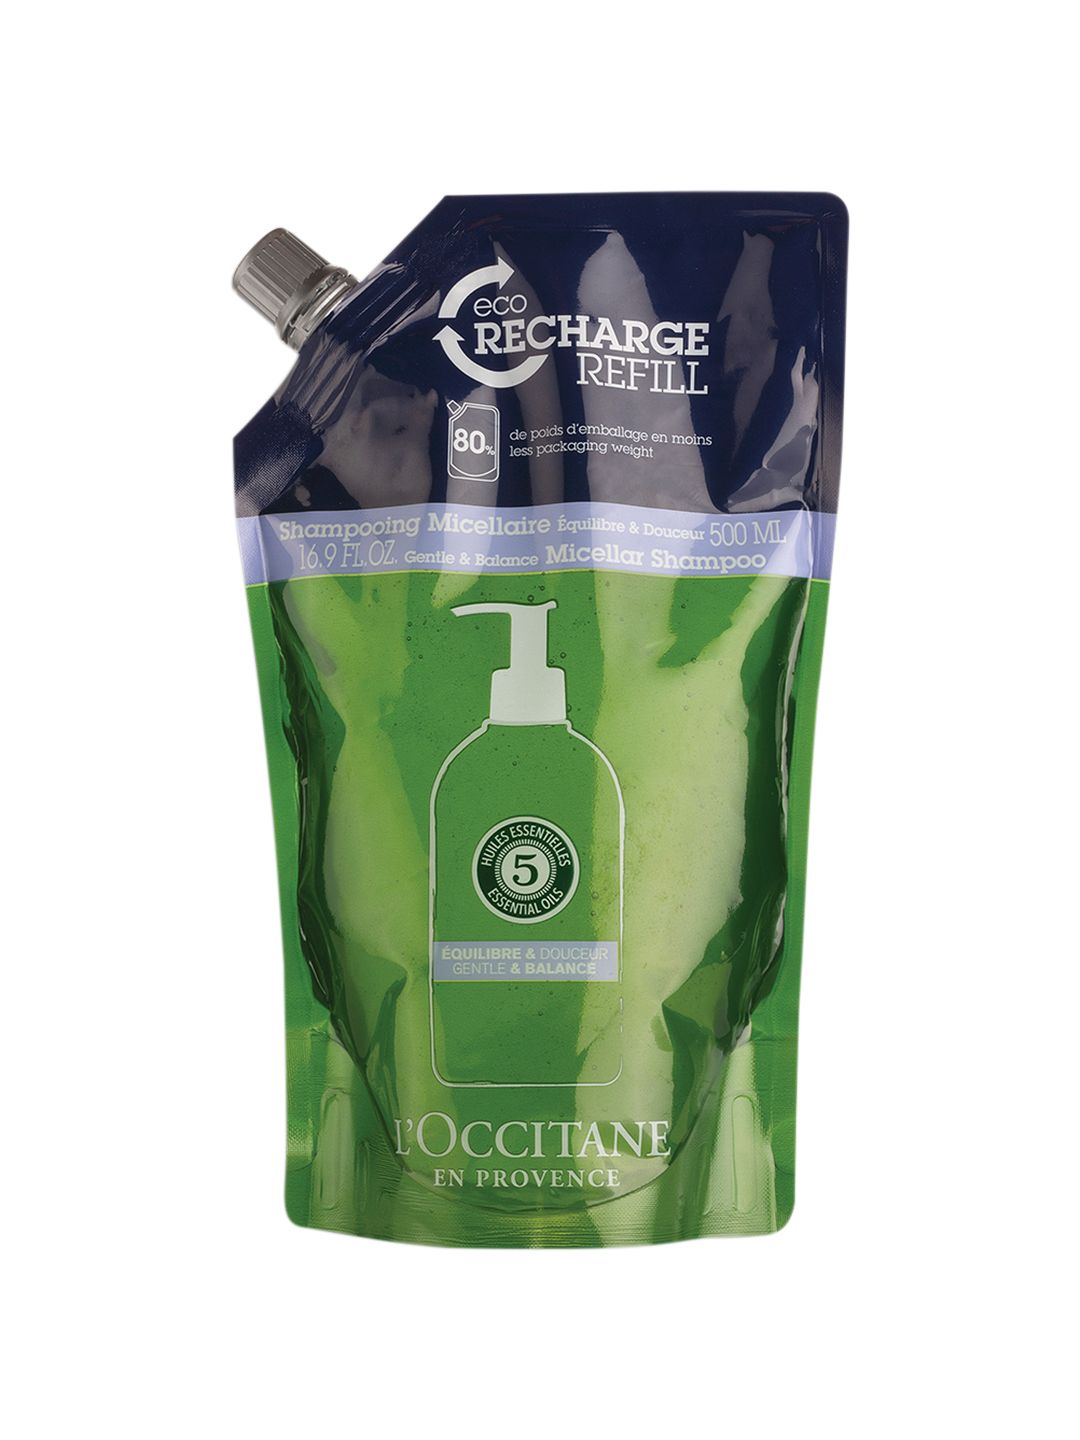 L'Occitane en Provence Gentle & Balance Micellar Shampoo Eco-Refill 500ml Price in India